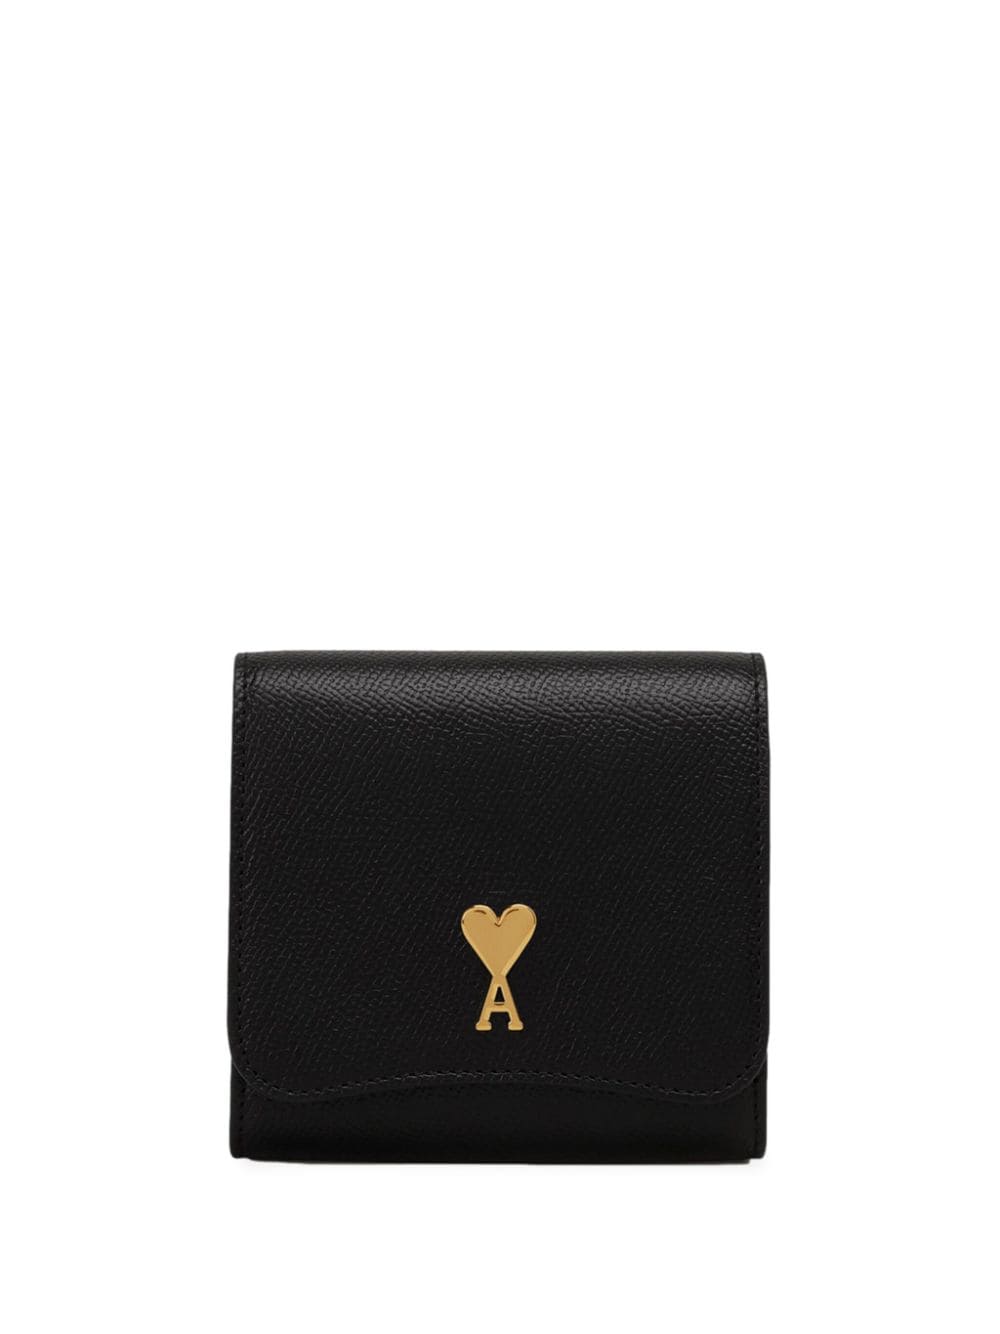 AMI Paris Paris Paris compact leather wallet - Black von AMI Paris